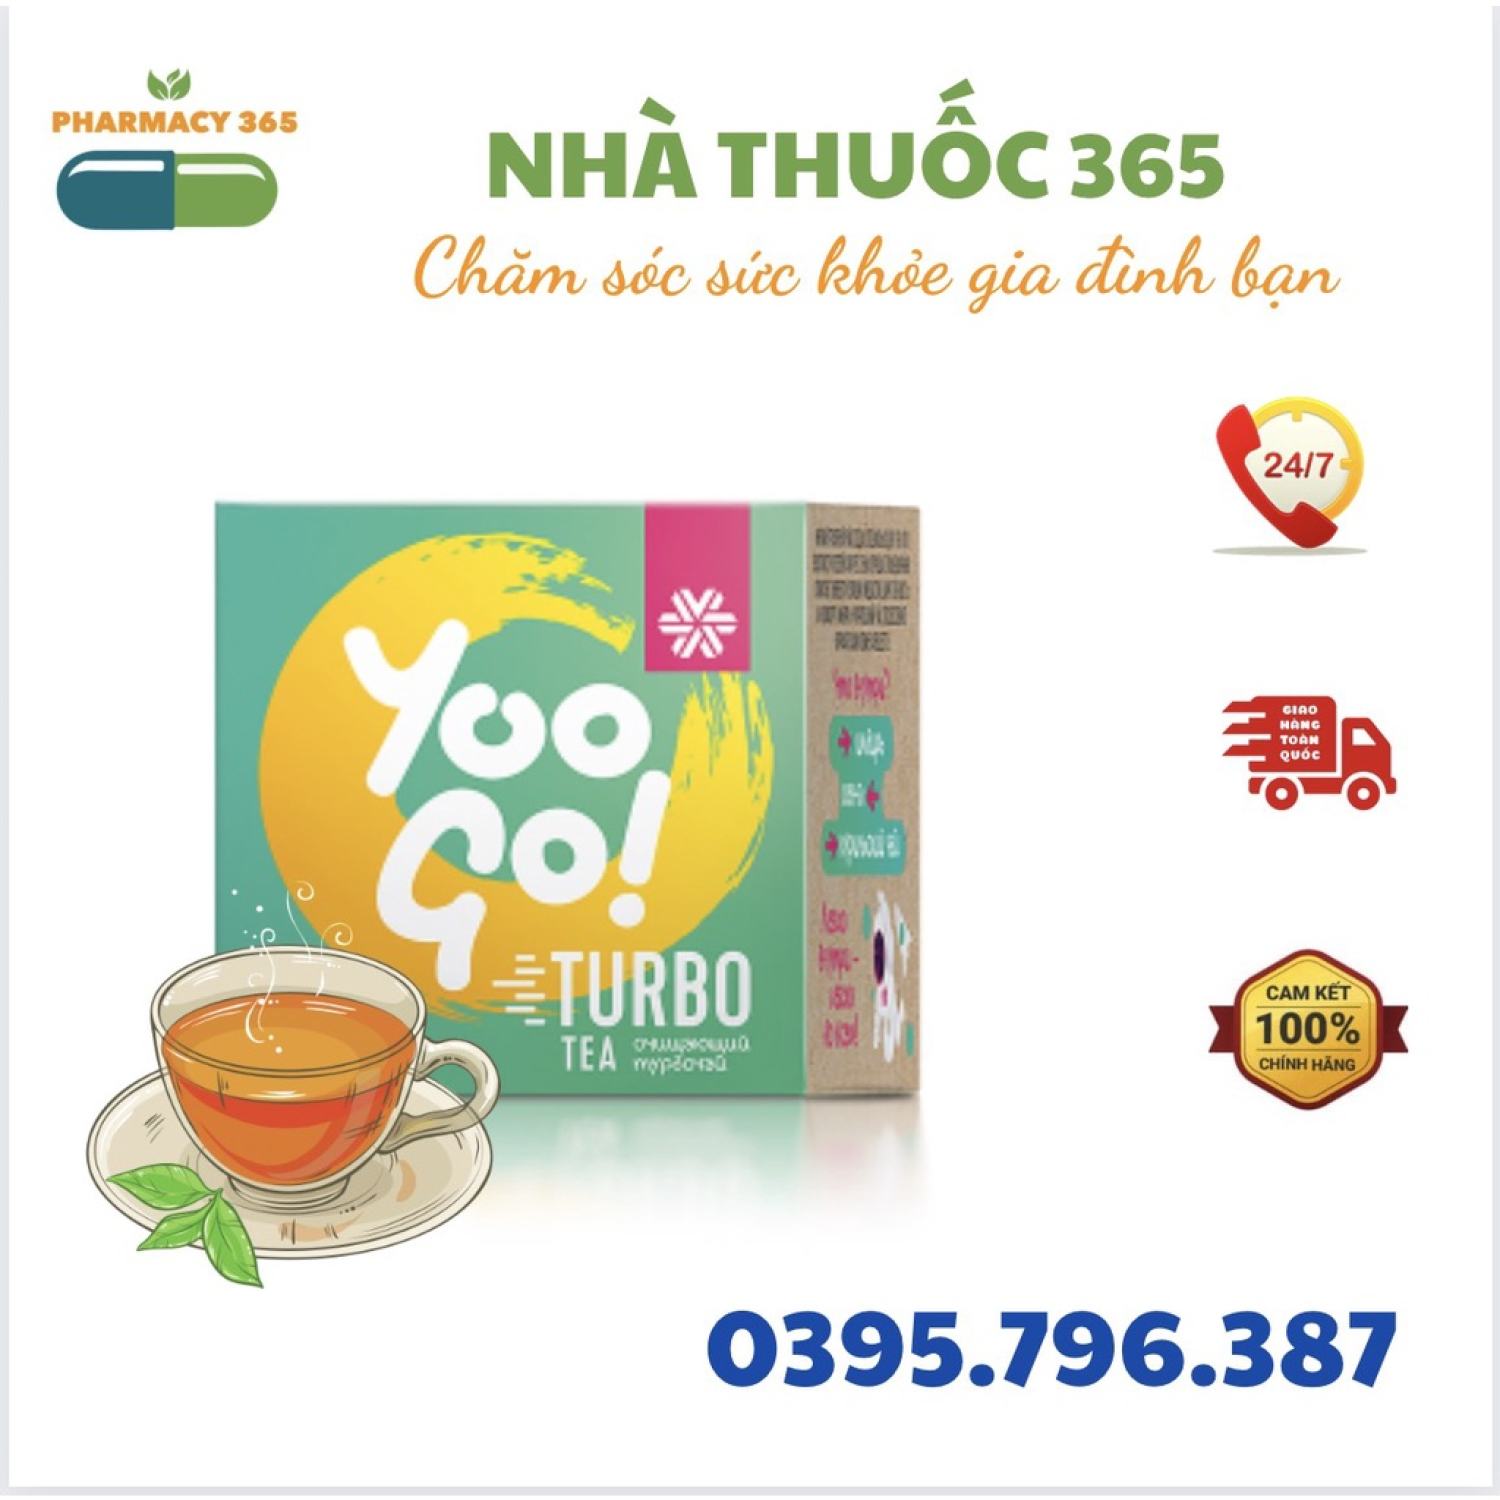 Trà thảo mộc Yoo Go Turbo Tea siberian, Hỗ trợ giảm cân